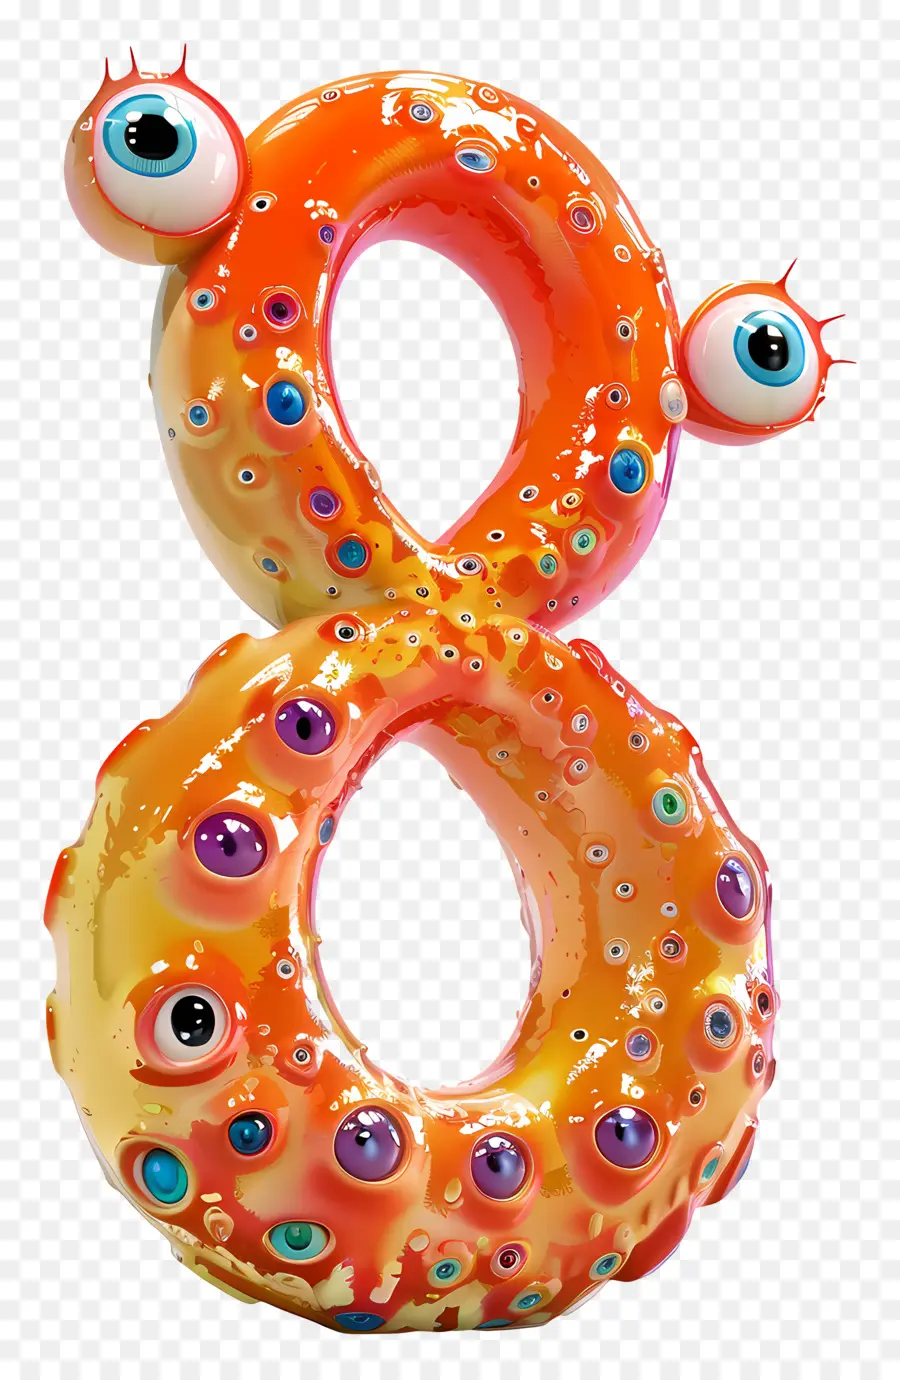 Số phim hoạt hình 3D mắt bạch tuộc màu đỏ và trắng số tám - Bạch tuộc làm từ số tám và mắt